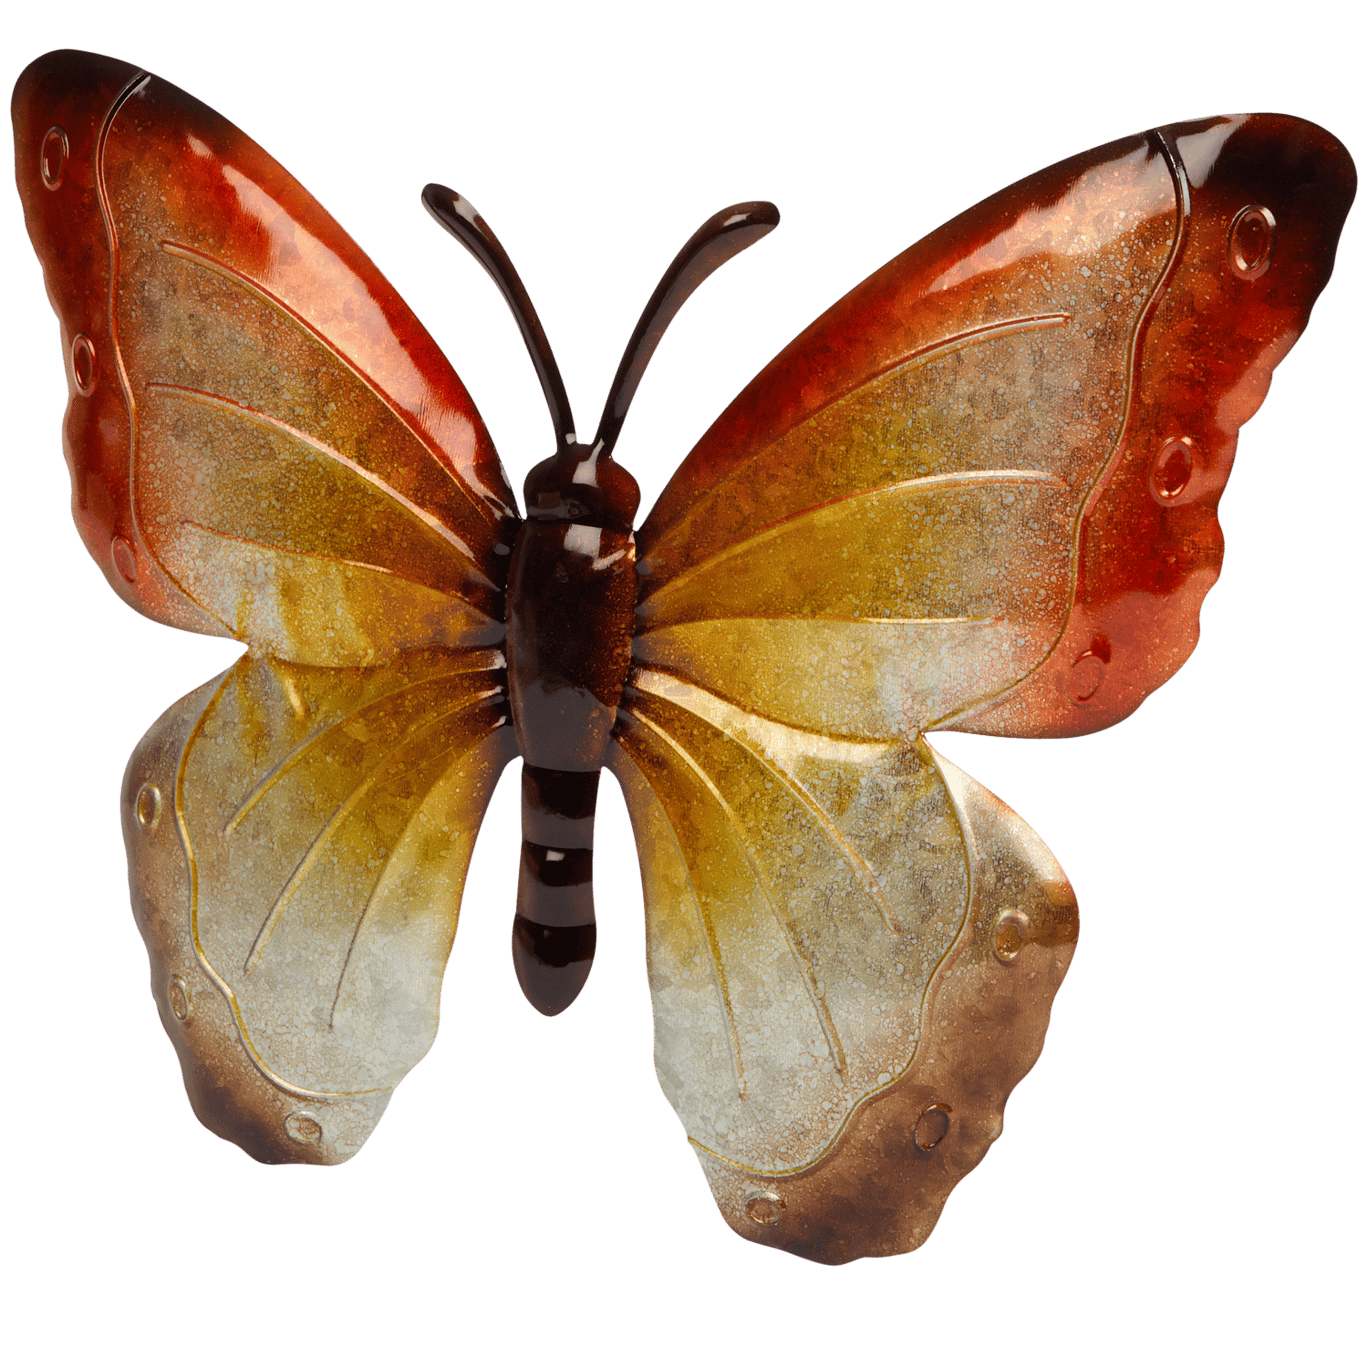 Deko-Schmetterling